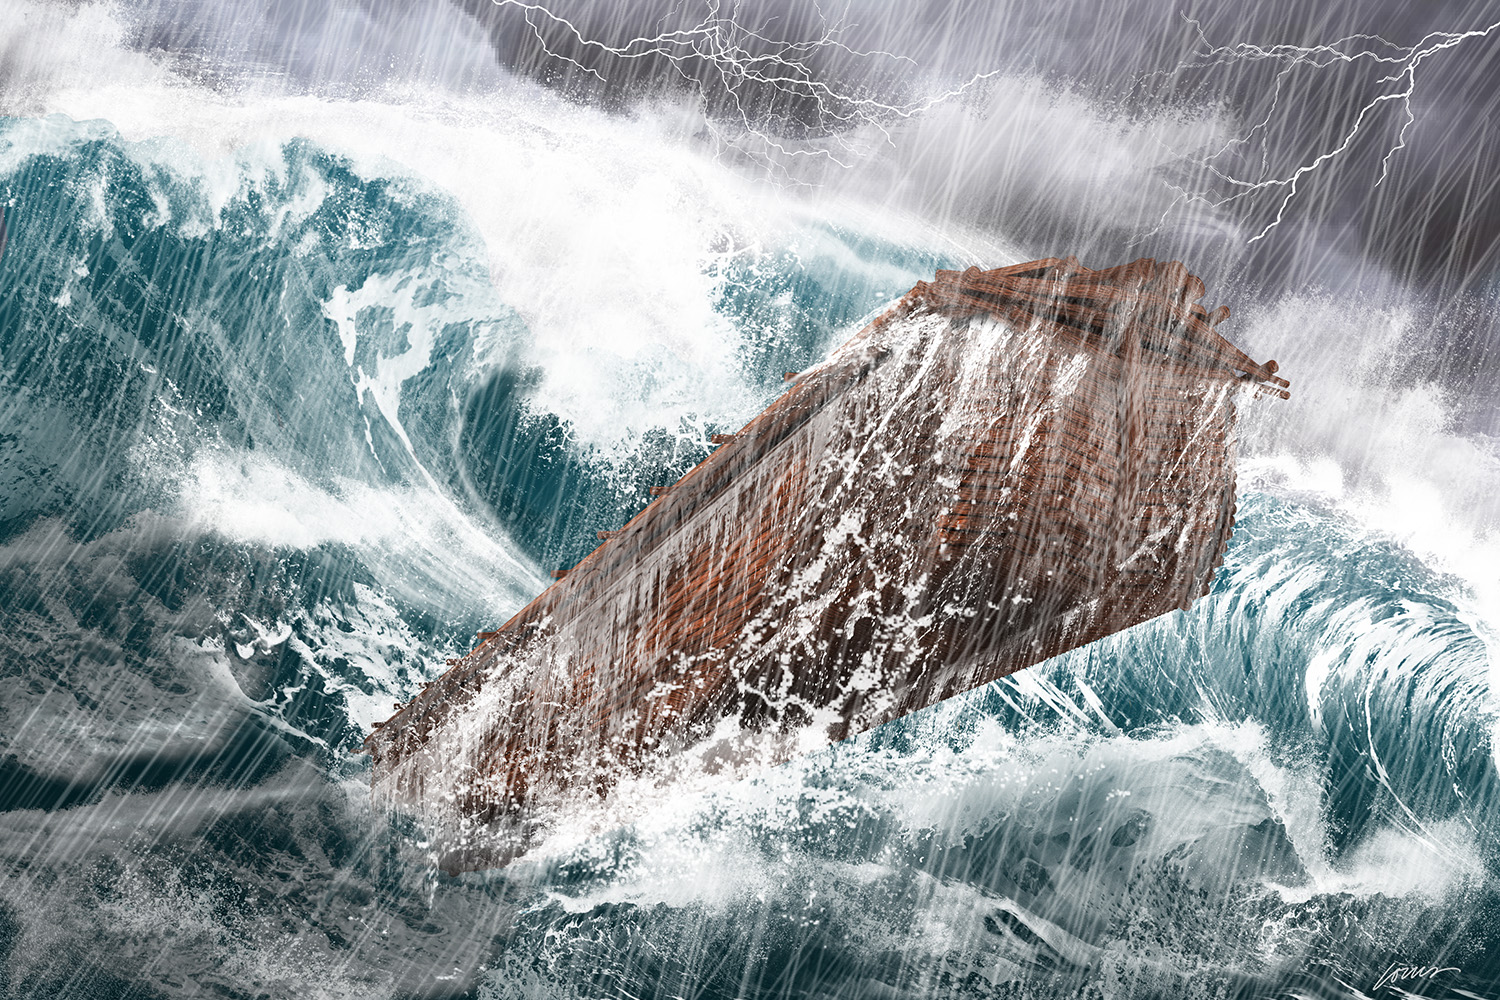 Dni Noego a obecne zmiany klimatu